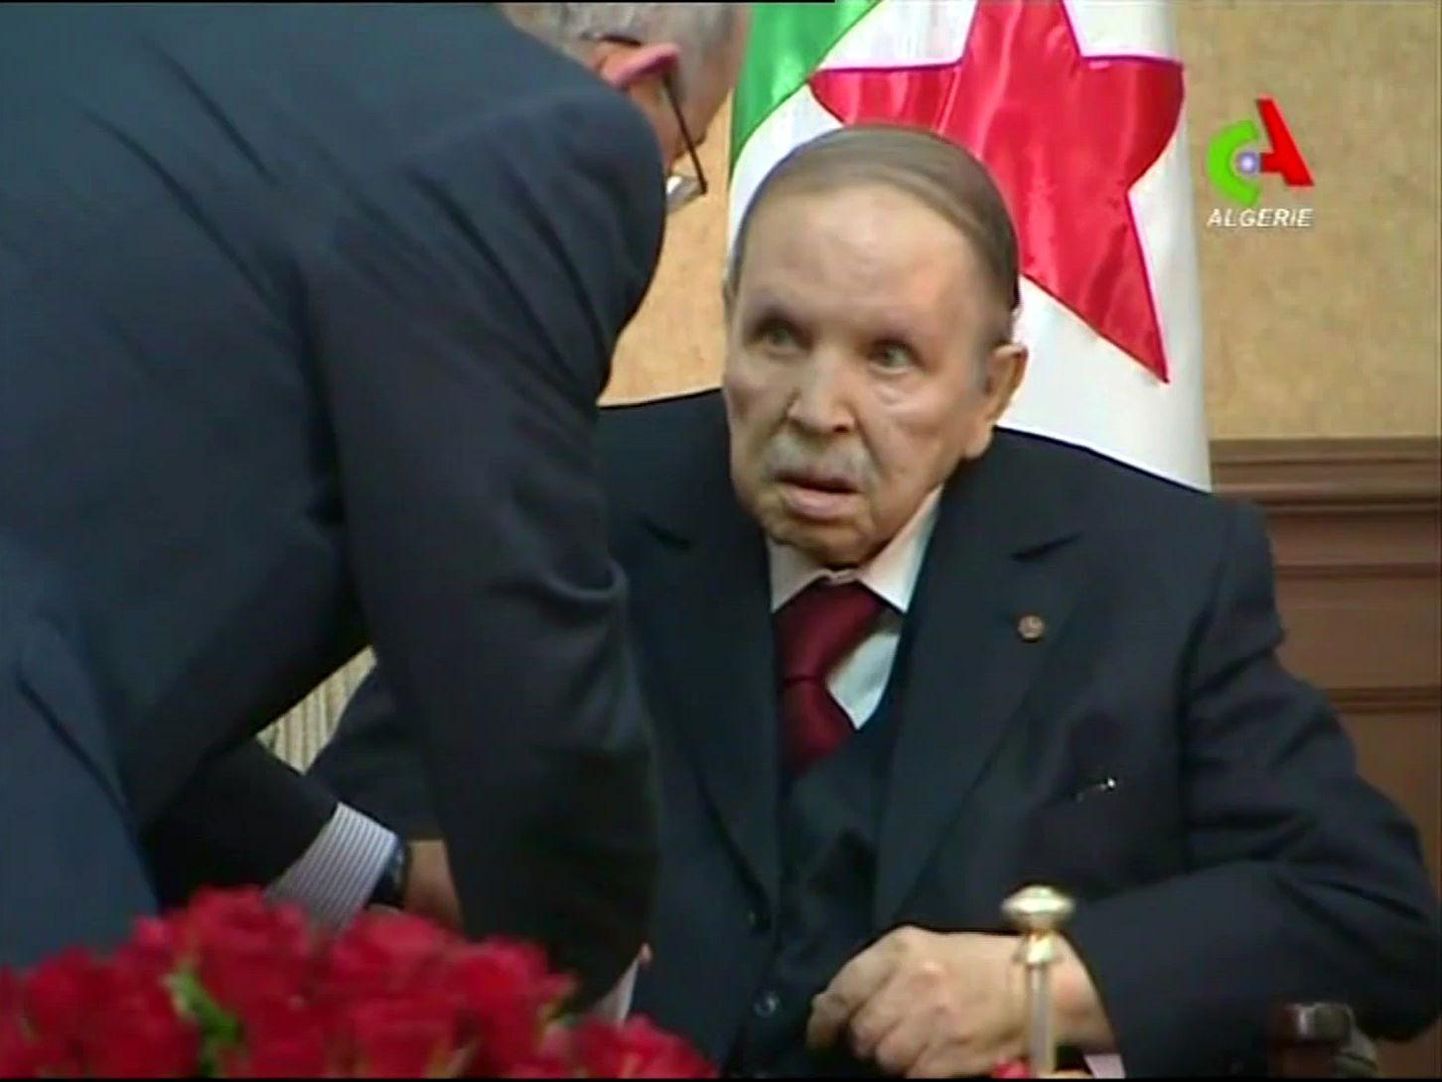 Telekanal Canal Algerie näitas üleeile salvestist, kuidas president Abdelaziz Bouteflika kohtus valitsuse liikmetega. Põdur riigipea ilmub avalikkuse ette äärmiselt harva ning pole teada, kui palju ta ise rääkida või tegutseda suudab. 